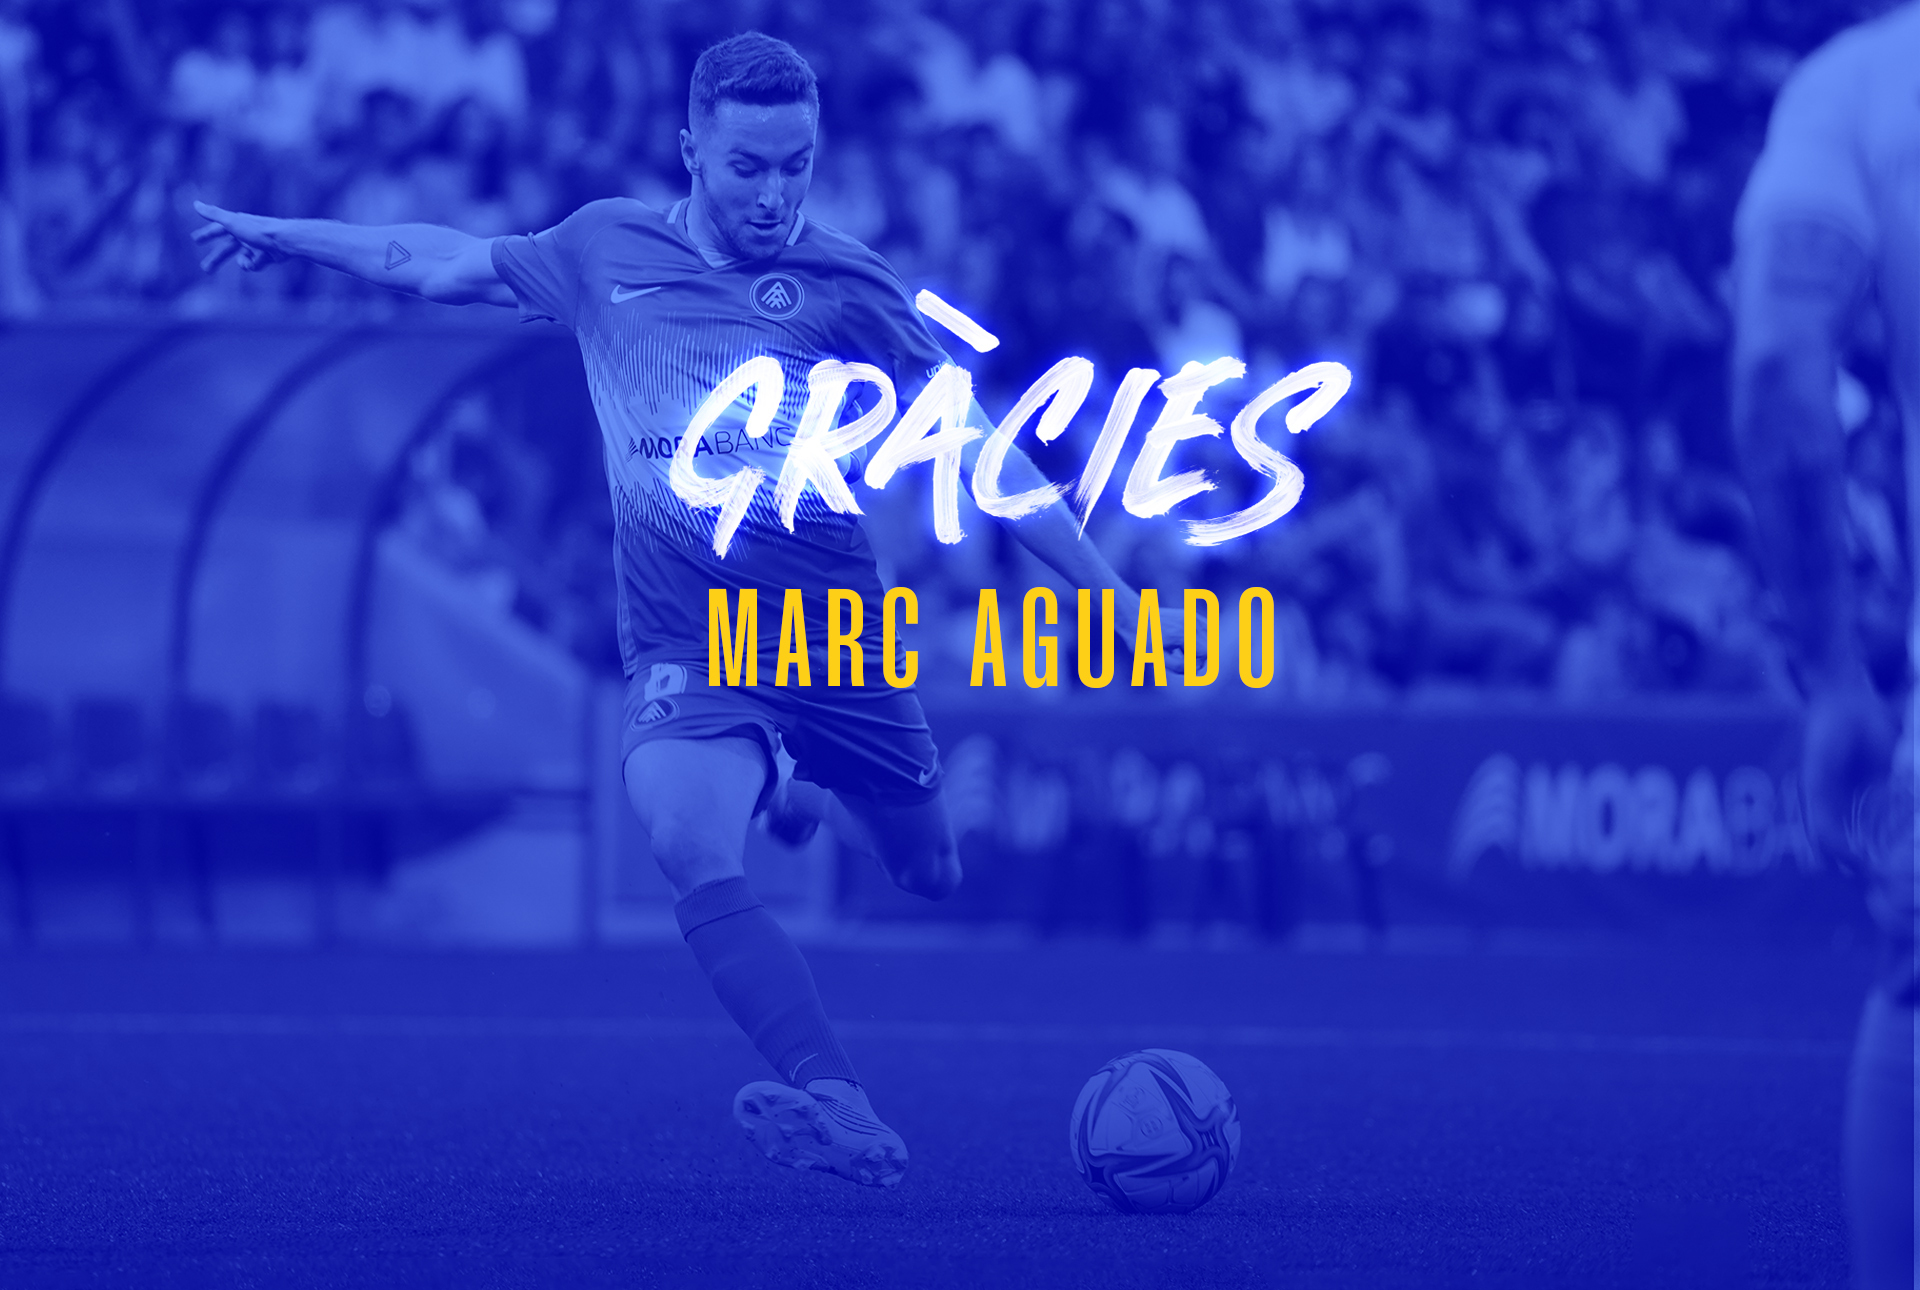 It's been a pleasure, Marc Aguado